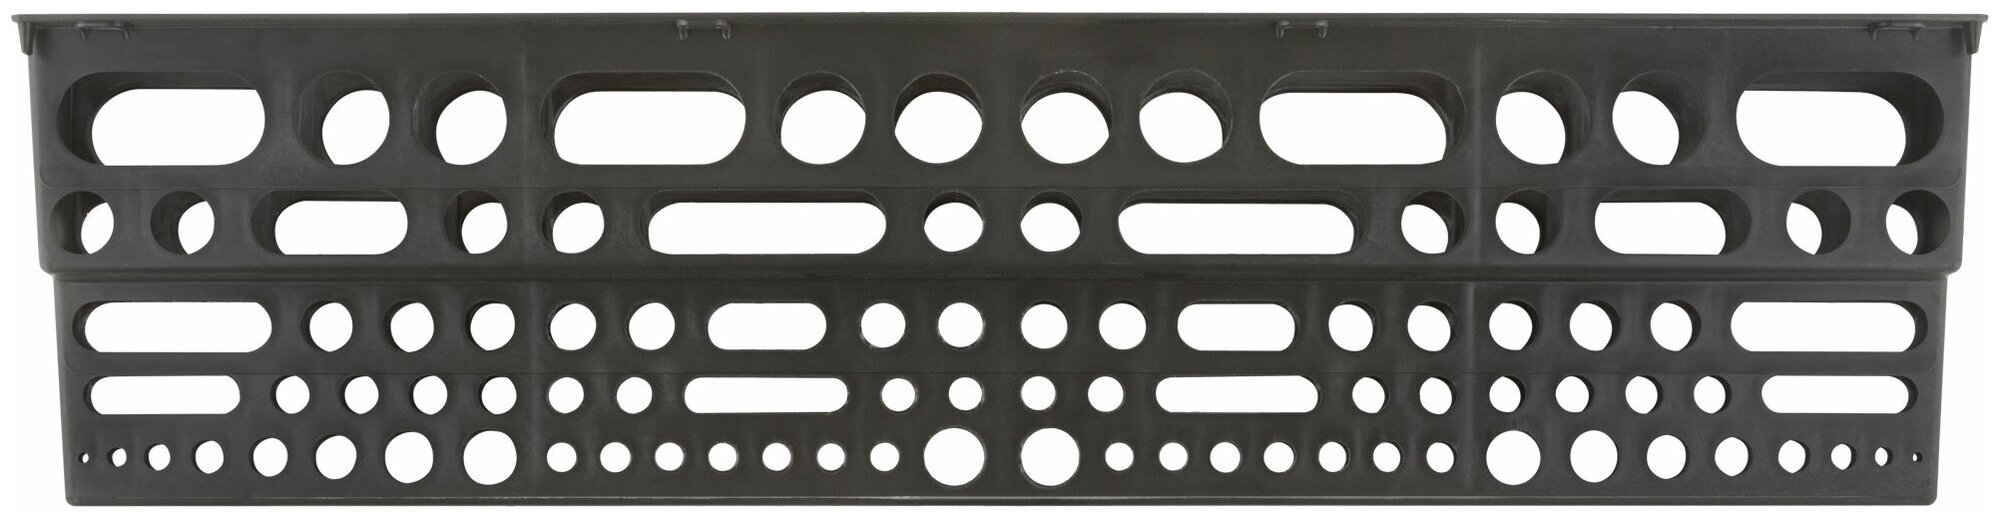 Полка для инструмента пластиковая черная 96 отверстий 610х150